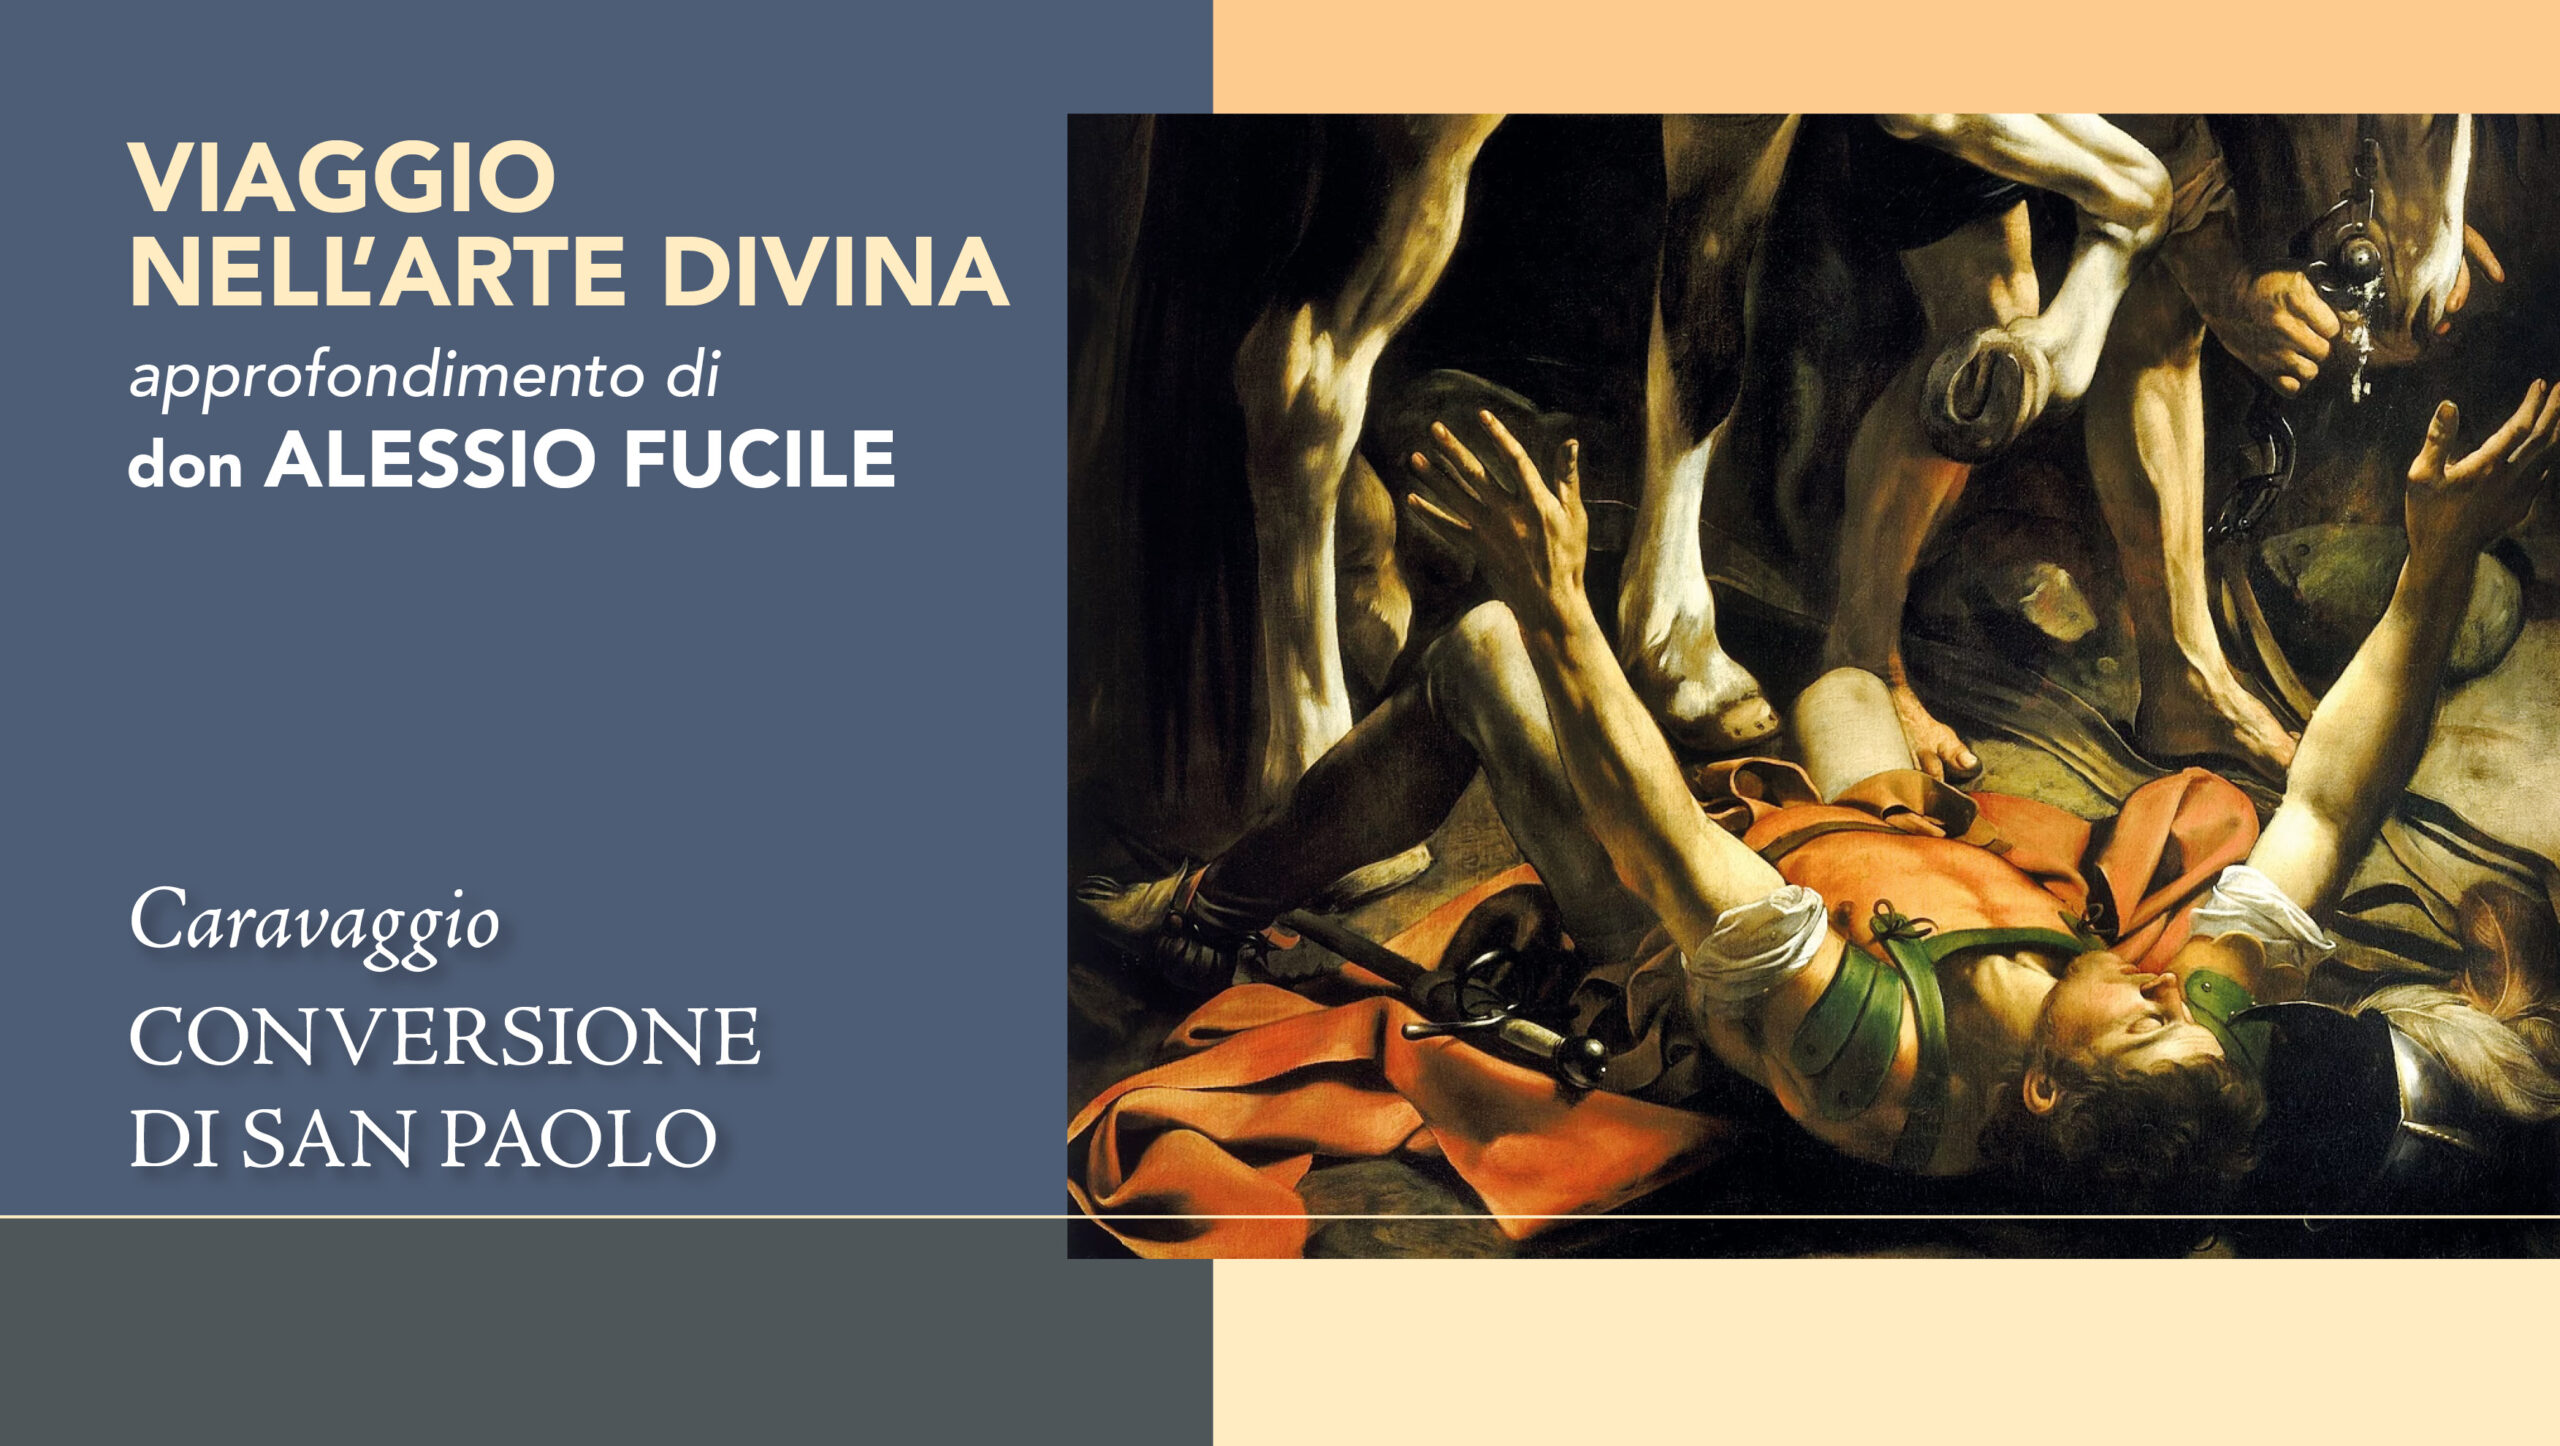 Dalle tenebre alla luce: la “Conversione di San Paolo” di Caravaggio